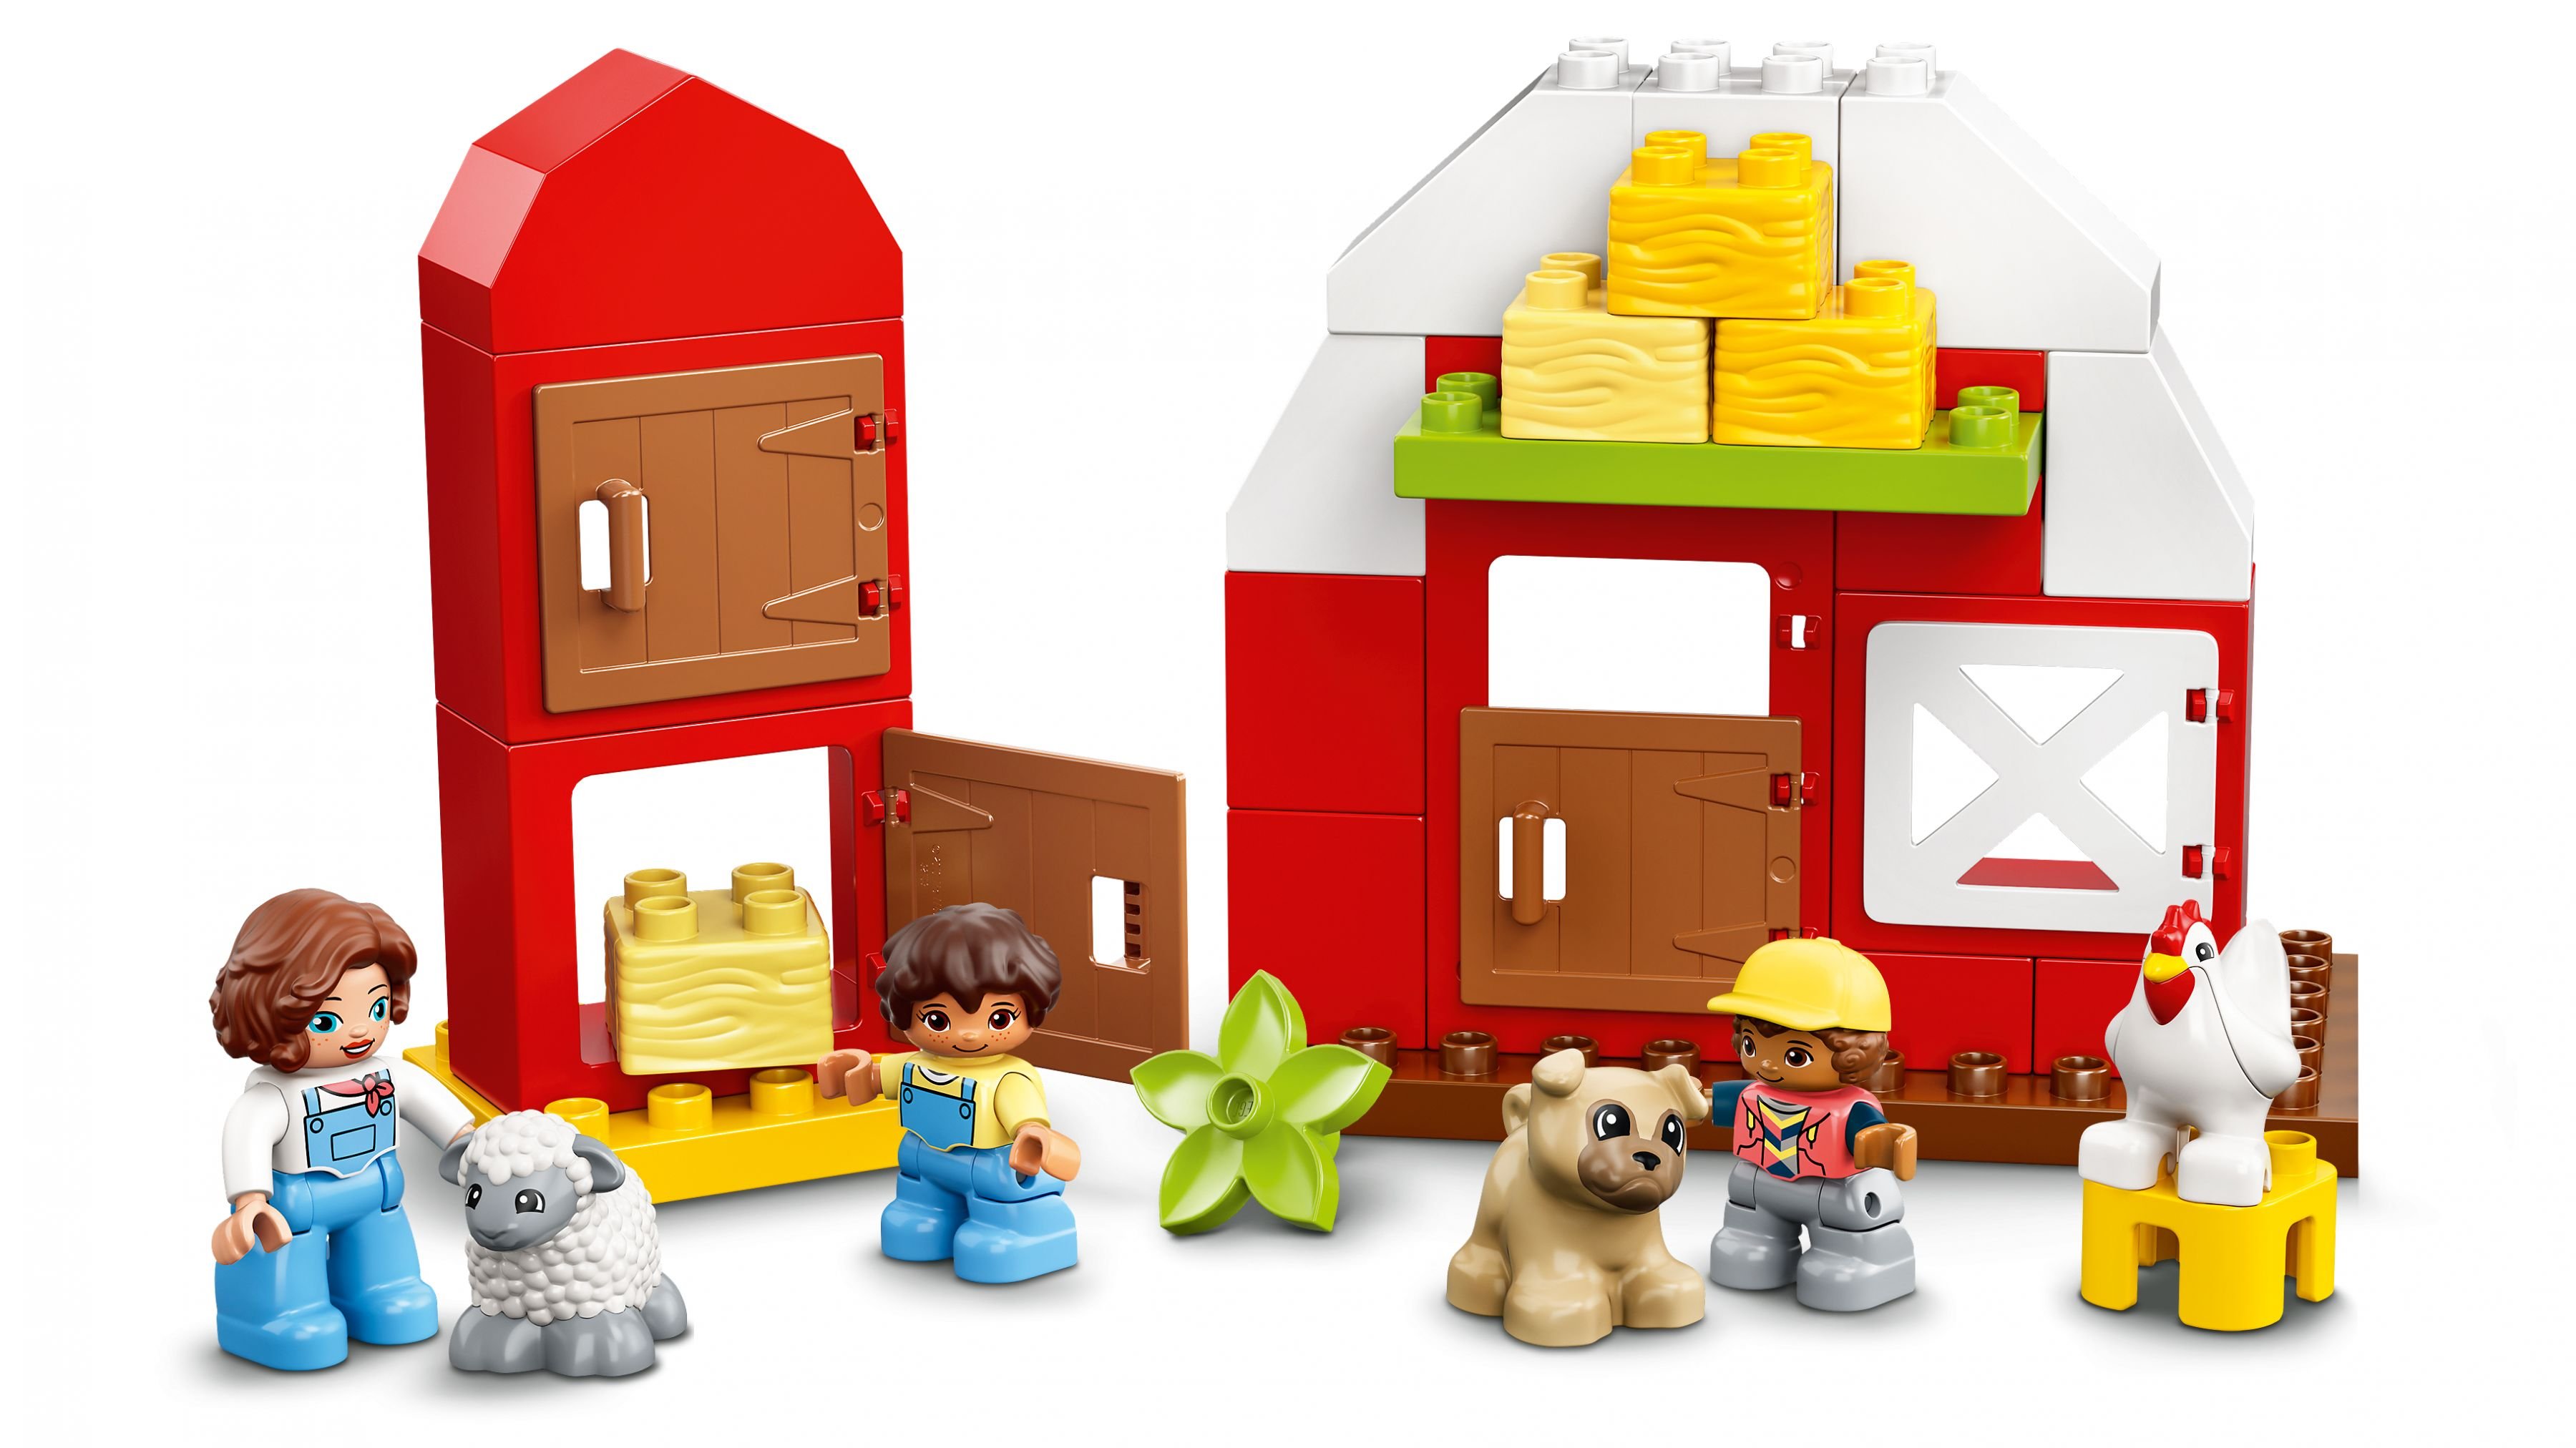 LEGO Duplo 10952 Scheune, Traktor und Tierpflege LEGO_10952_web_sec05_nobg.jpg